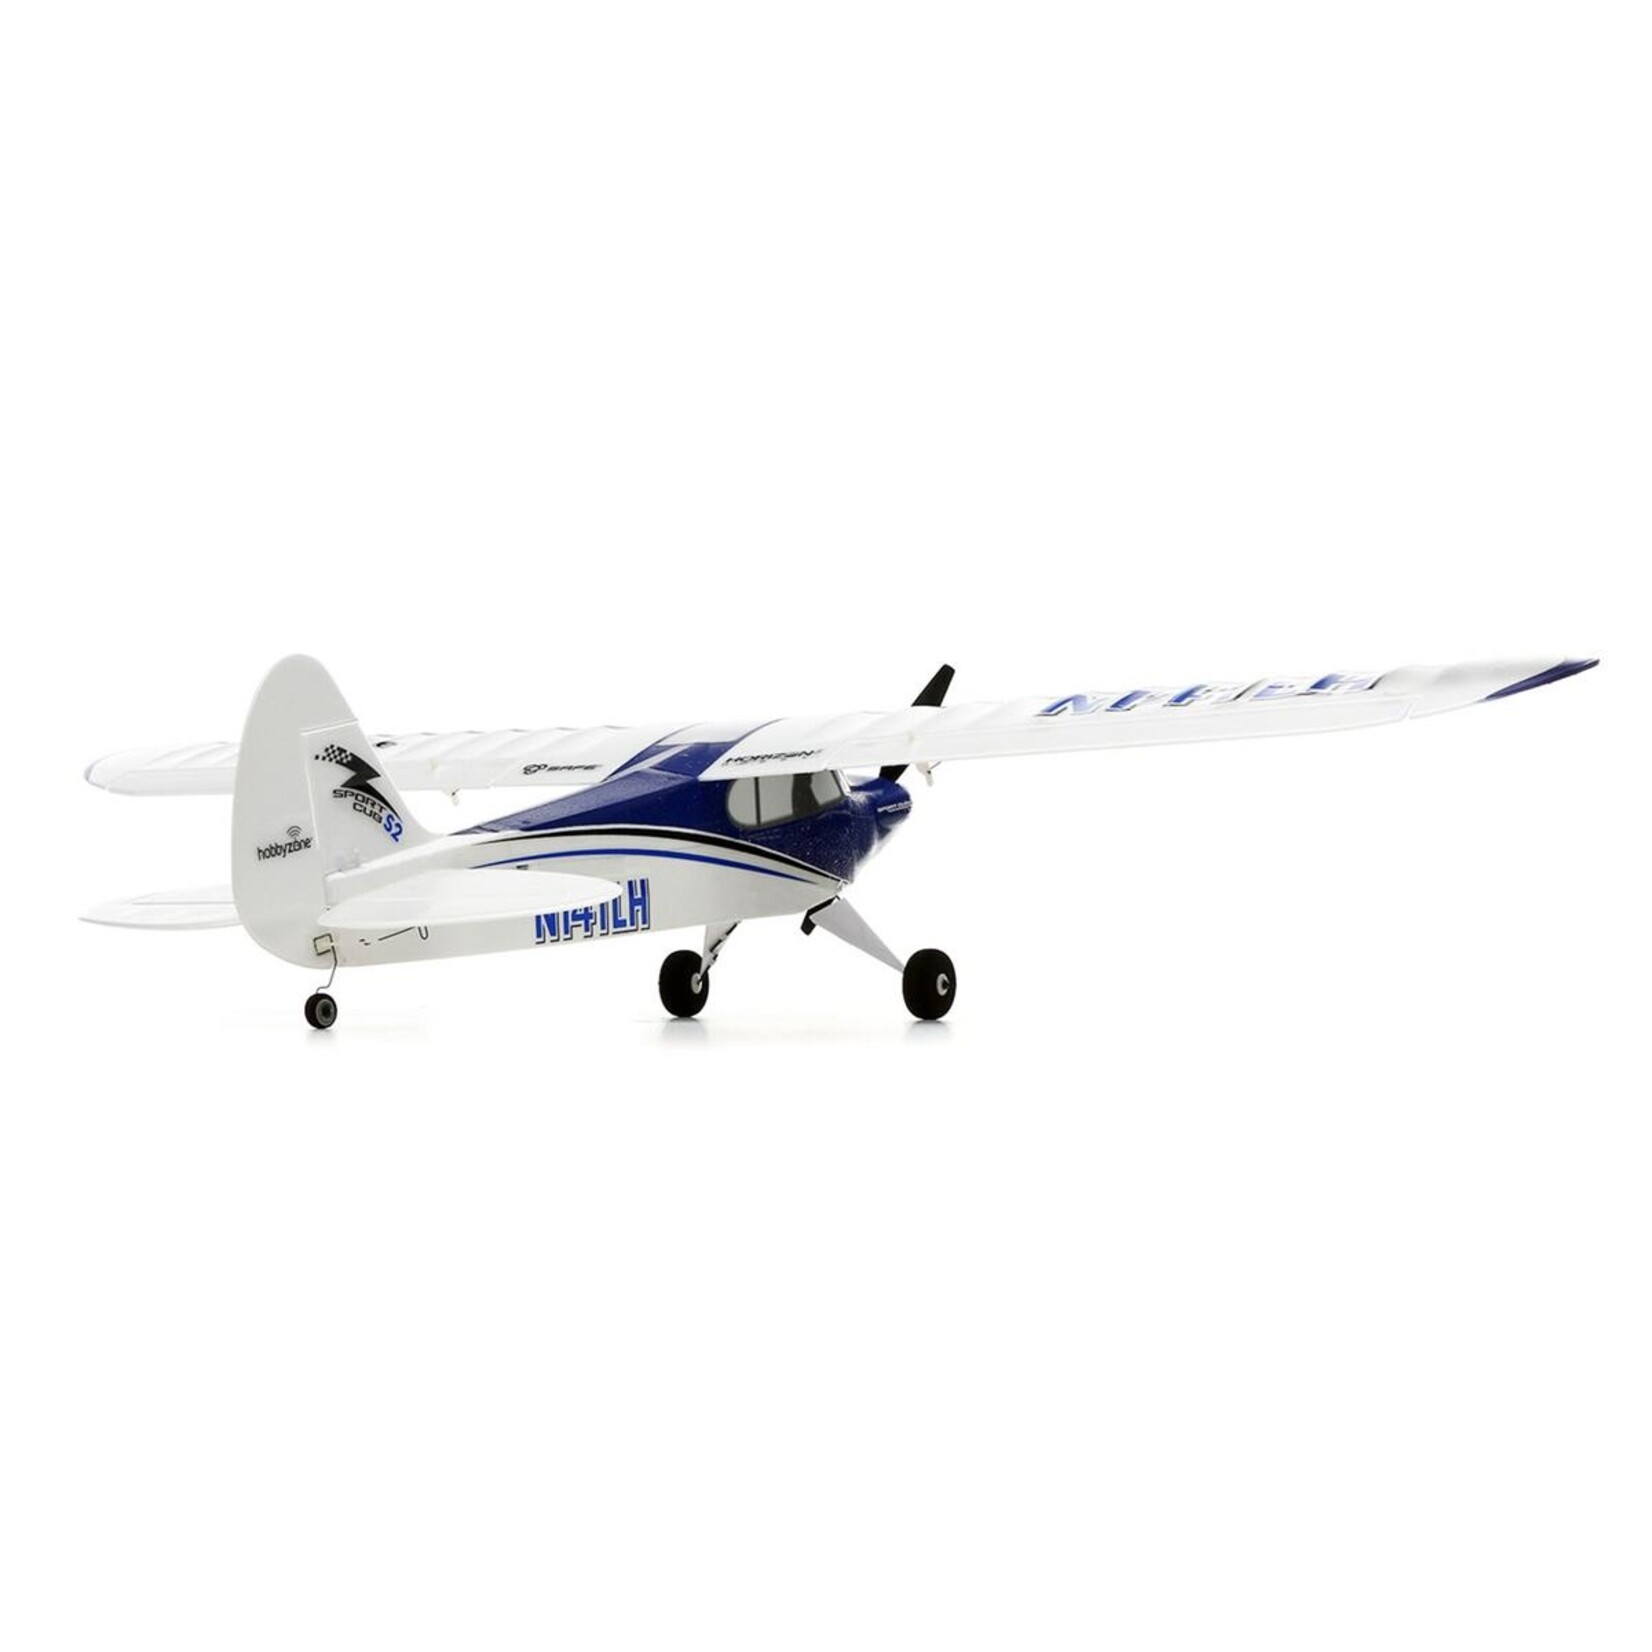 HobbyZone HobbyZone Sport Cub S 2 BNF Basic Electric Airplane w/SAFE (616mm) #HBZ44500